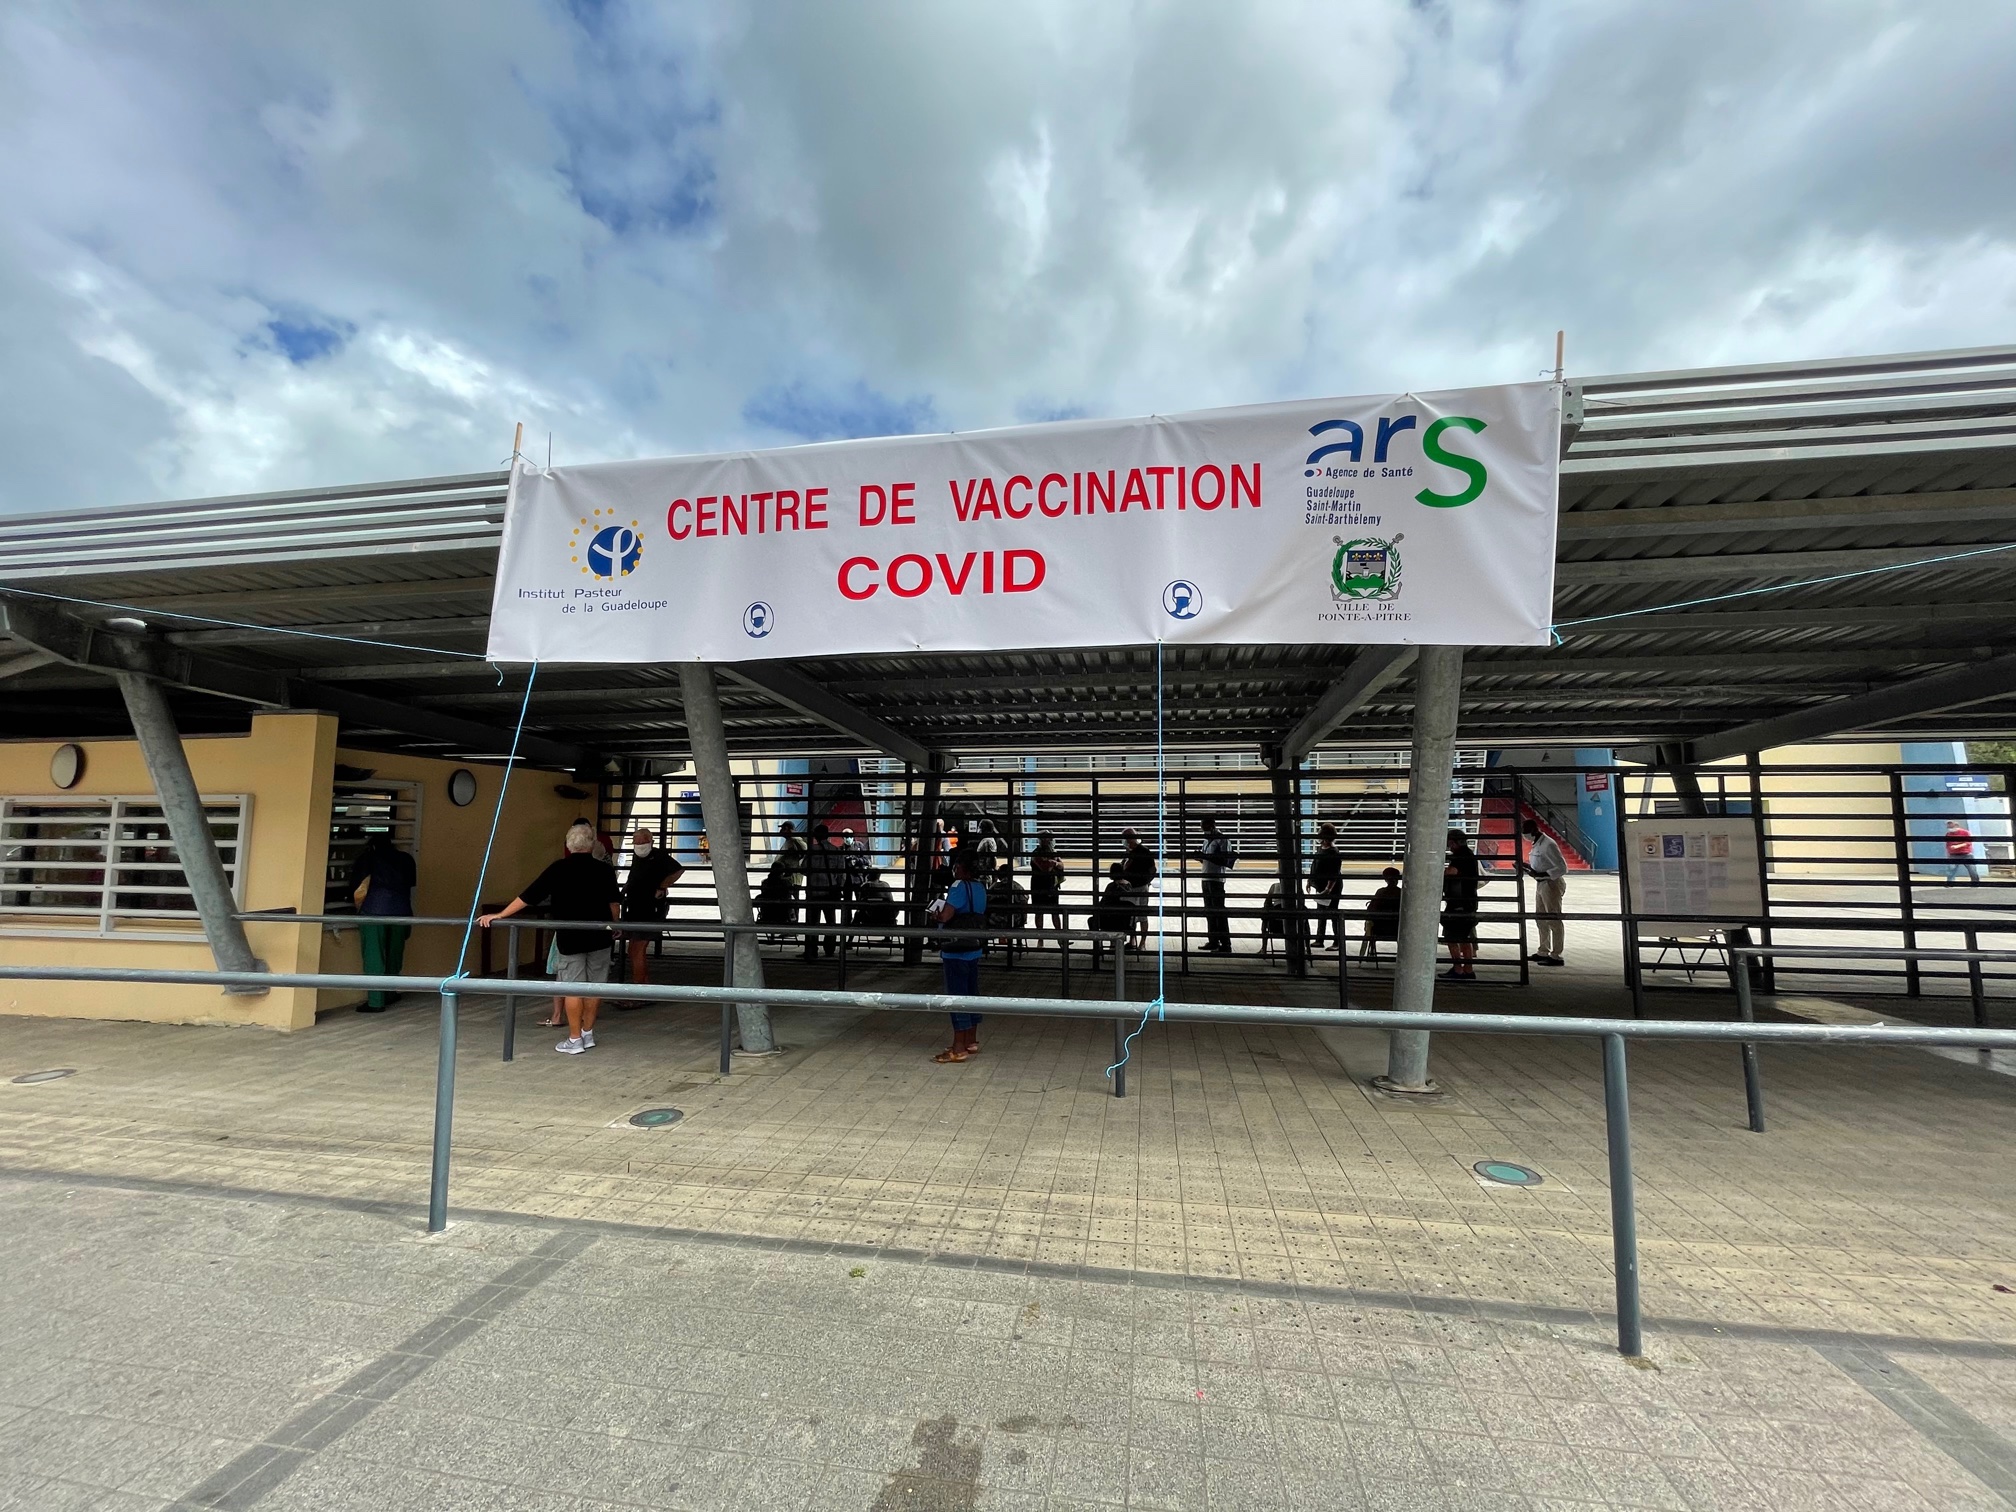     Ouverture d'un centre de vaccination COVID-19 à Pointe-à-Pitre

